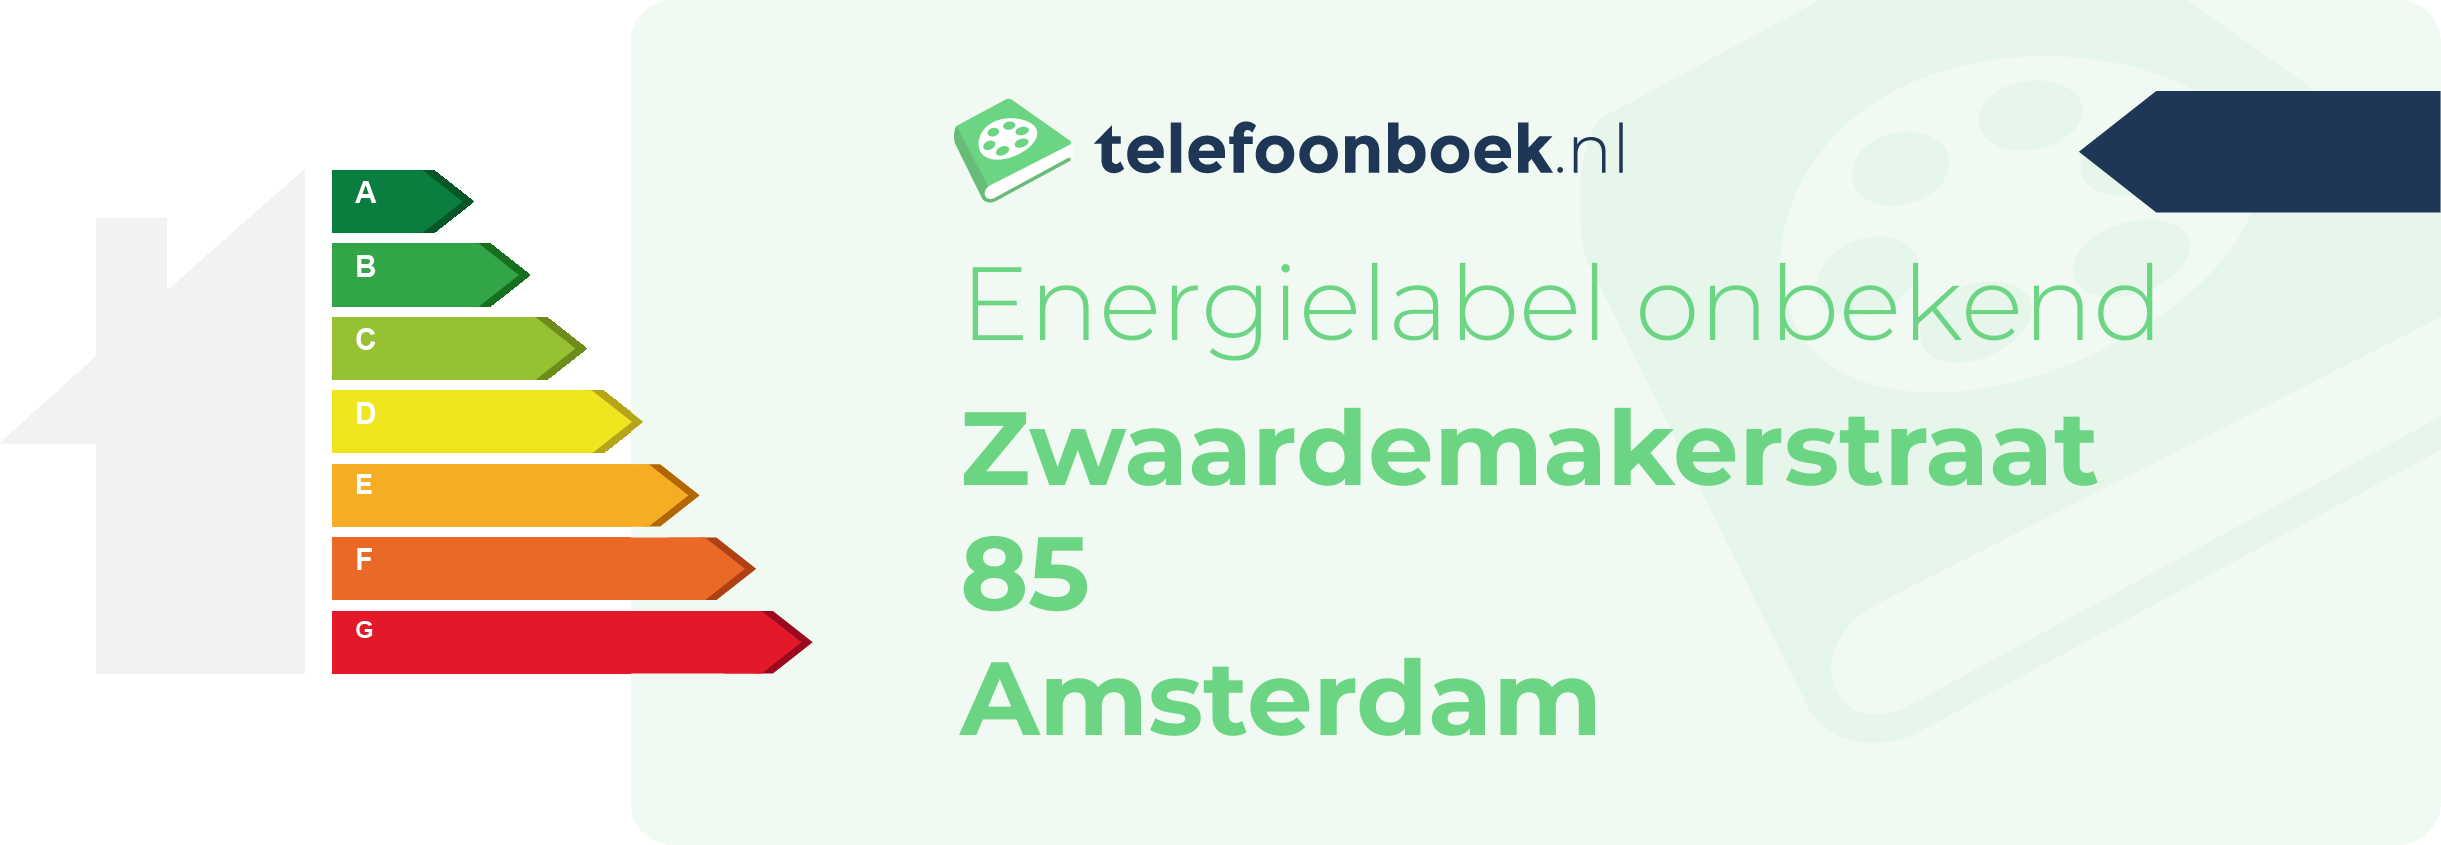 Energielabel Zwaardemakerstraat 85 Amsterdam